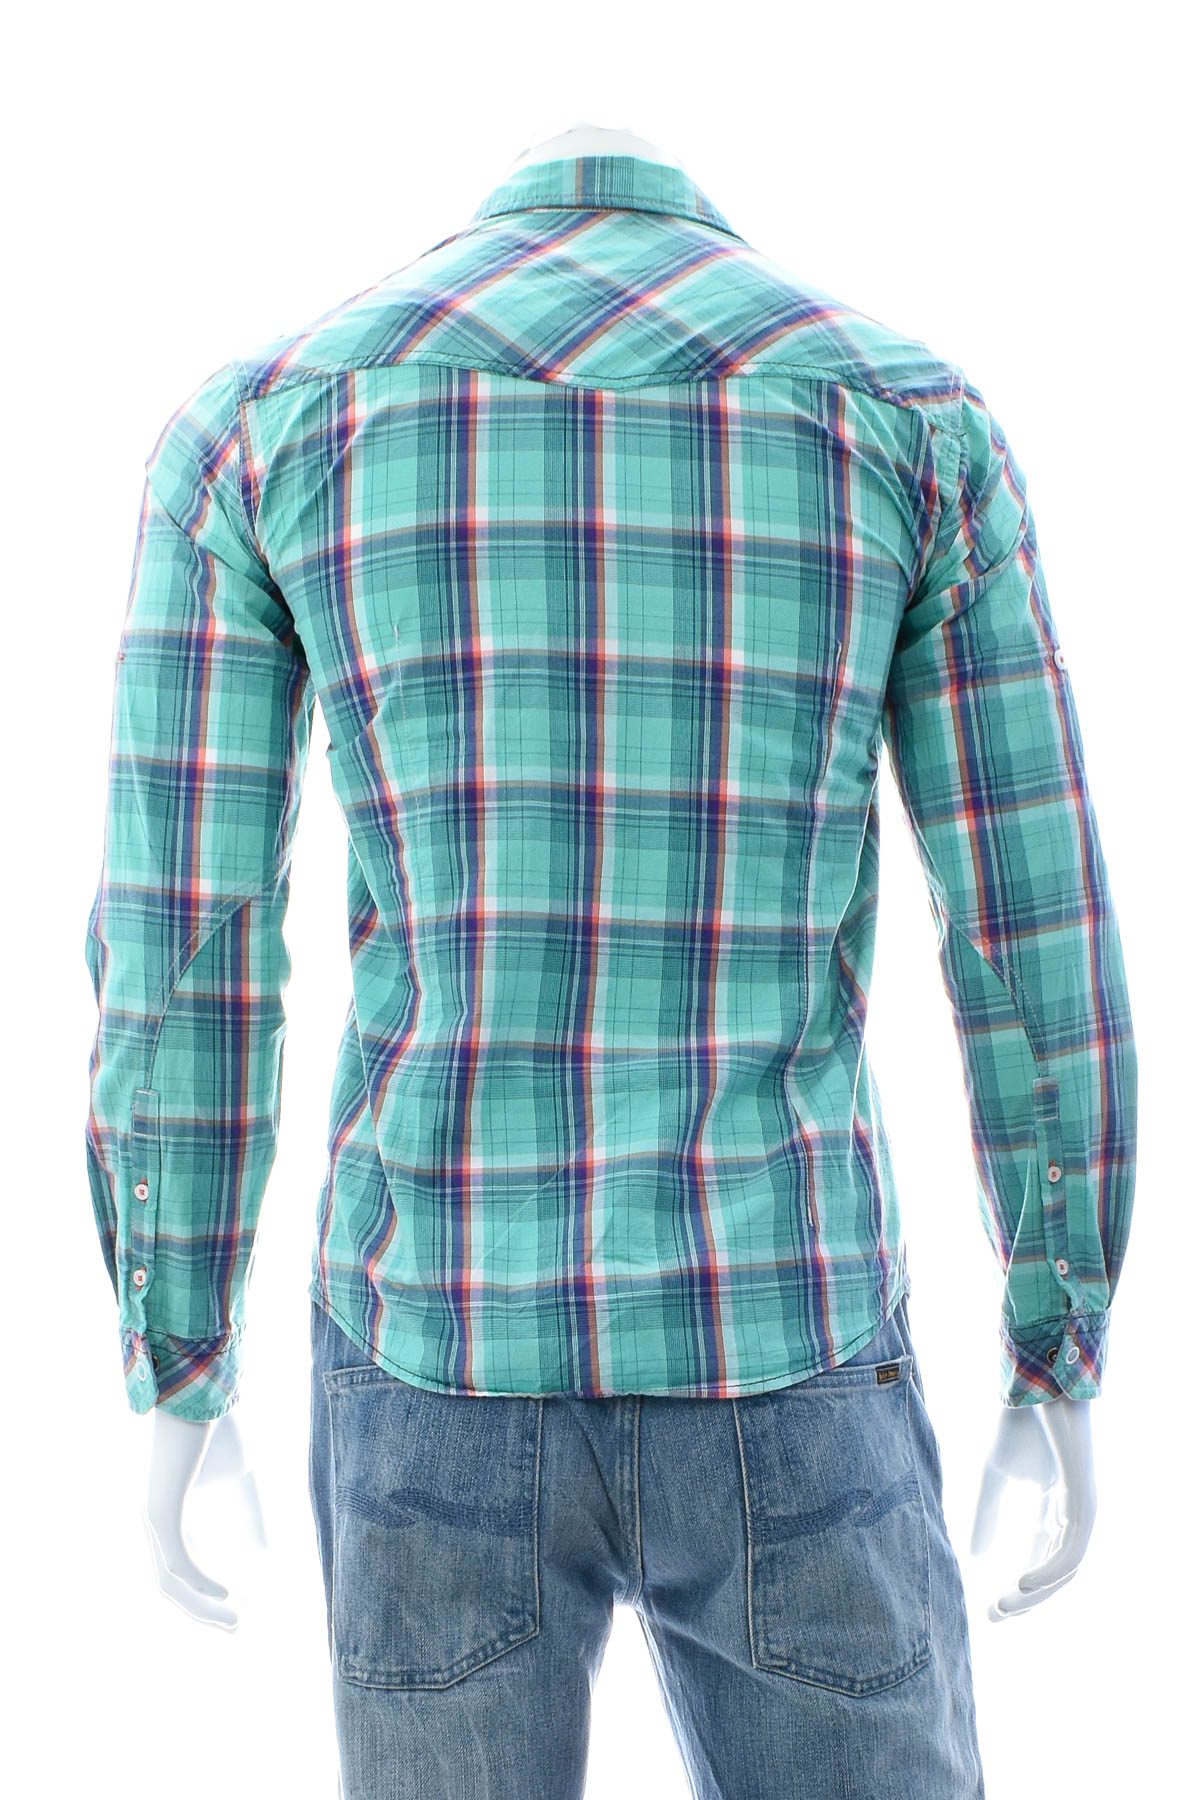 Men's shirt - TOM TAILOR Denim - 1